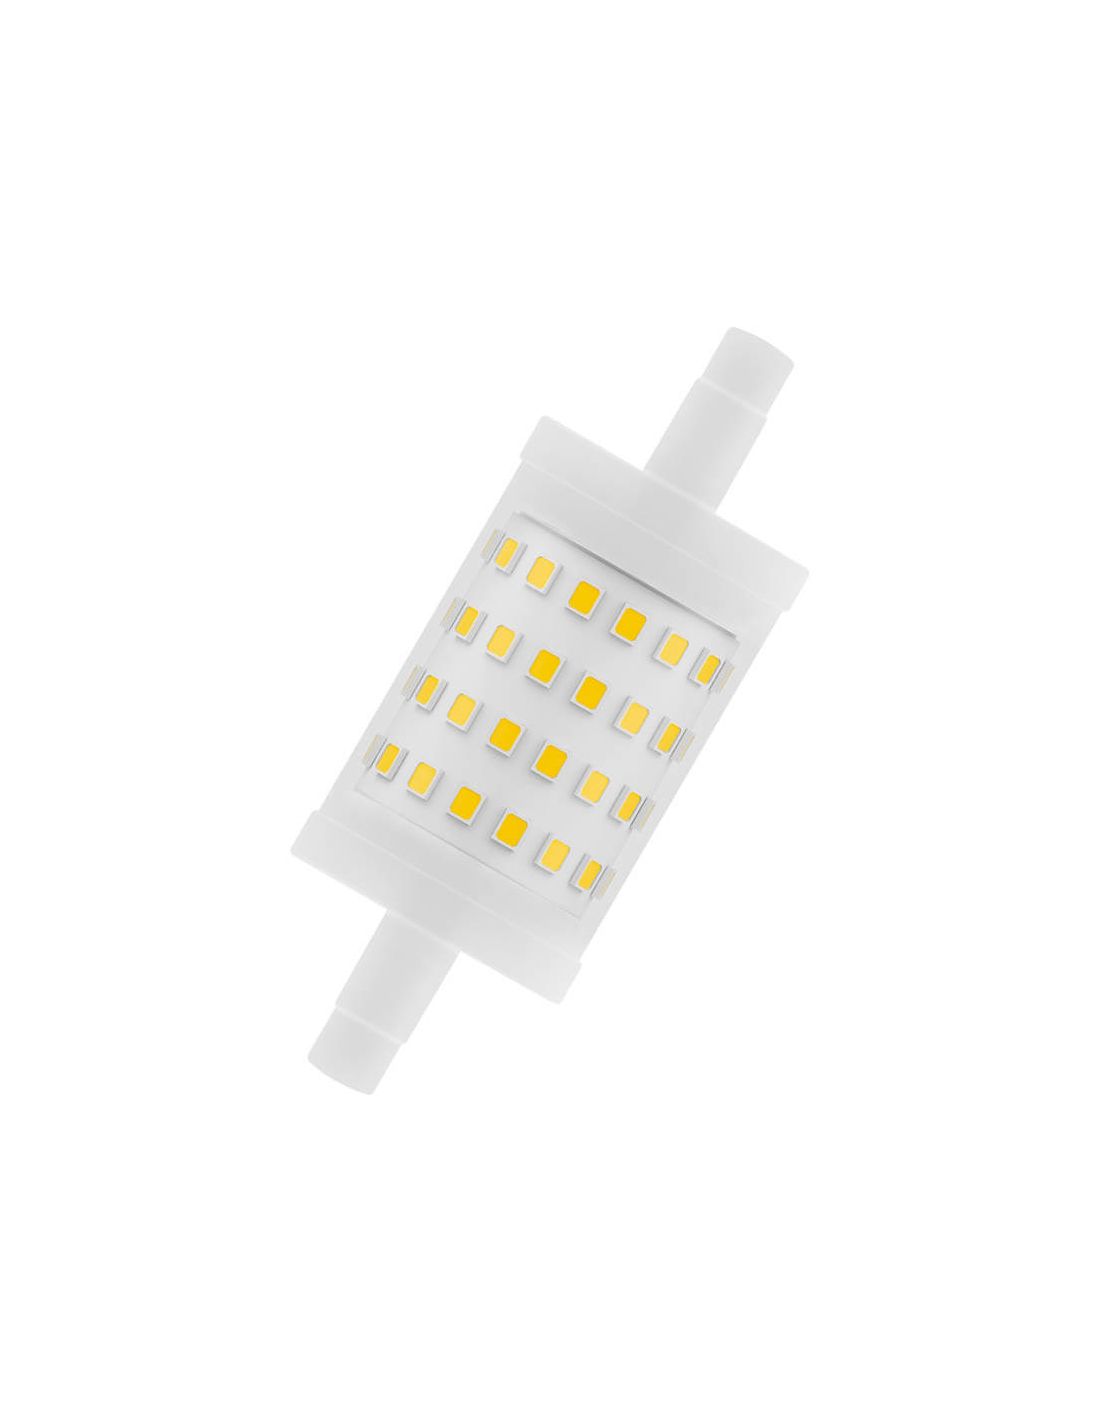 LED R7s pour replacer des halogènes R7s avec 118mm de 60W jusqu' à 100W!